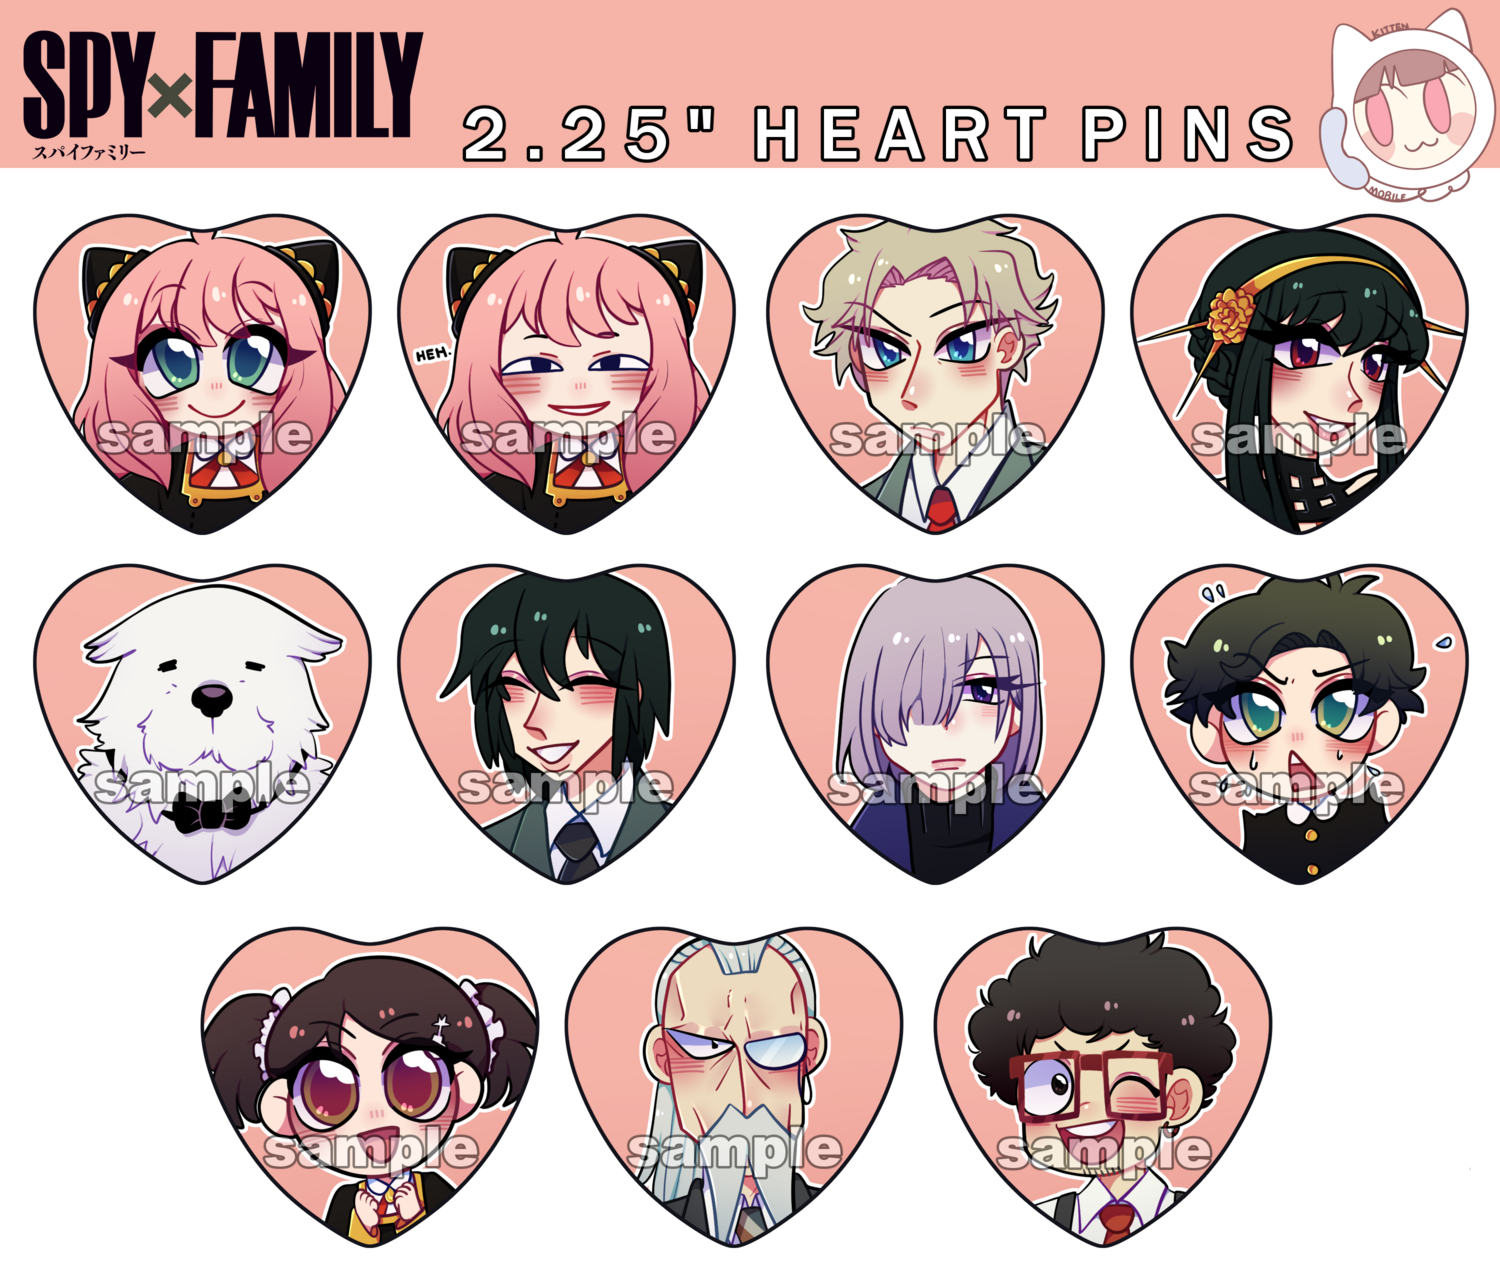 Spy x Family Heart pins